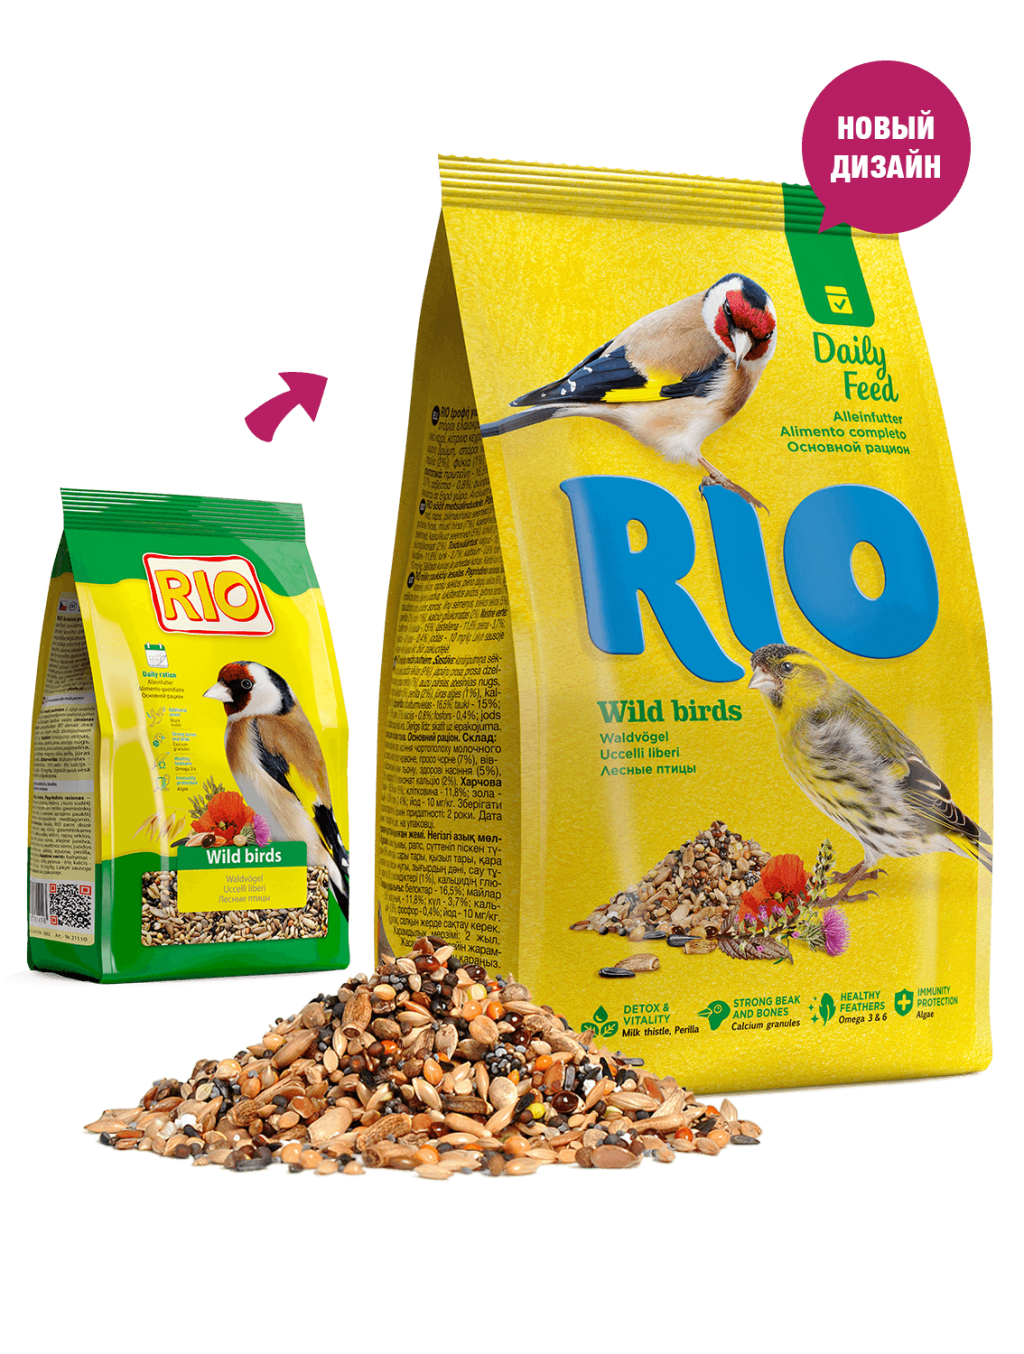 Рио Корм для лесных певчих птиц основной, 500 г, Rio